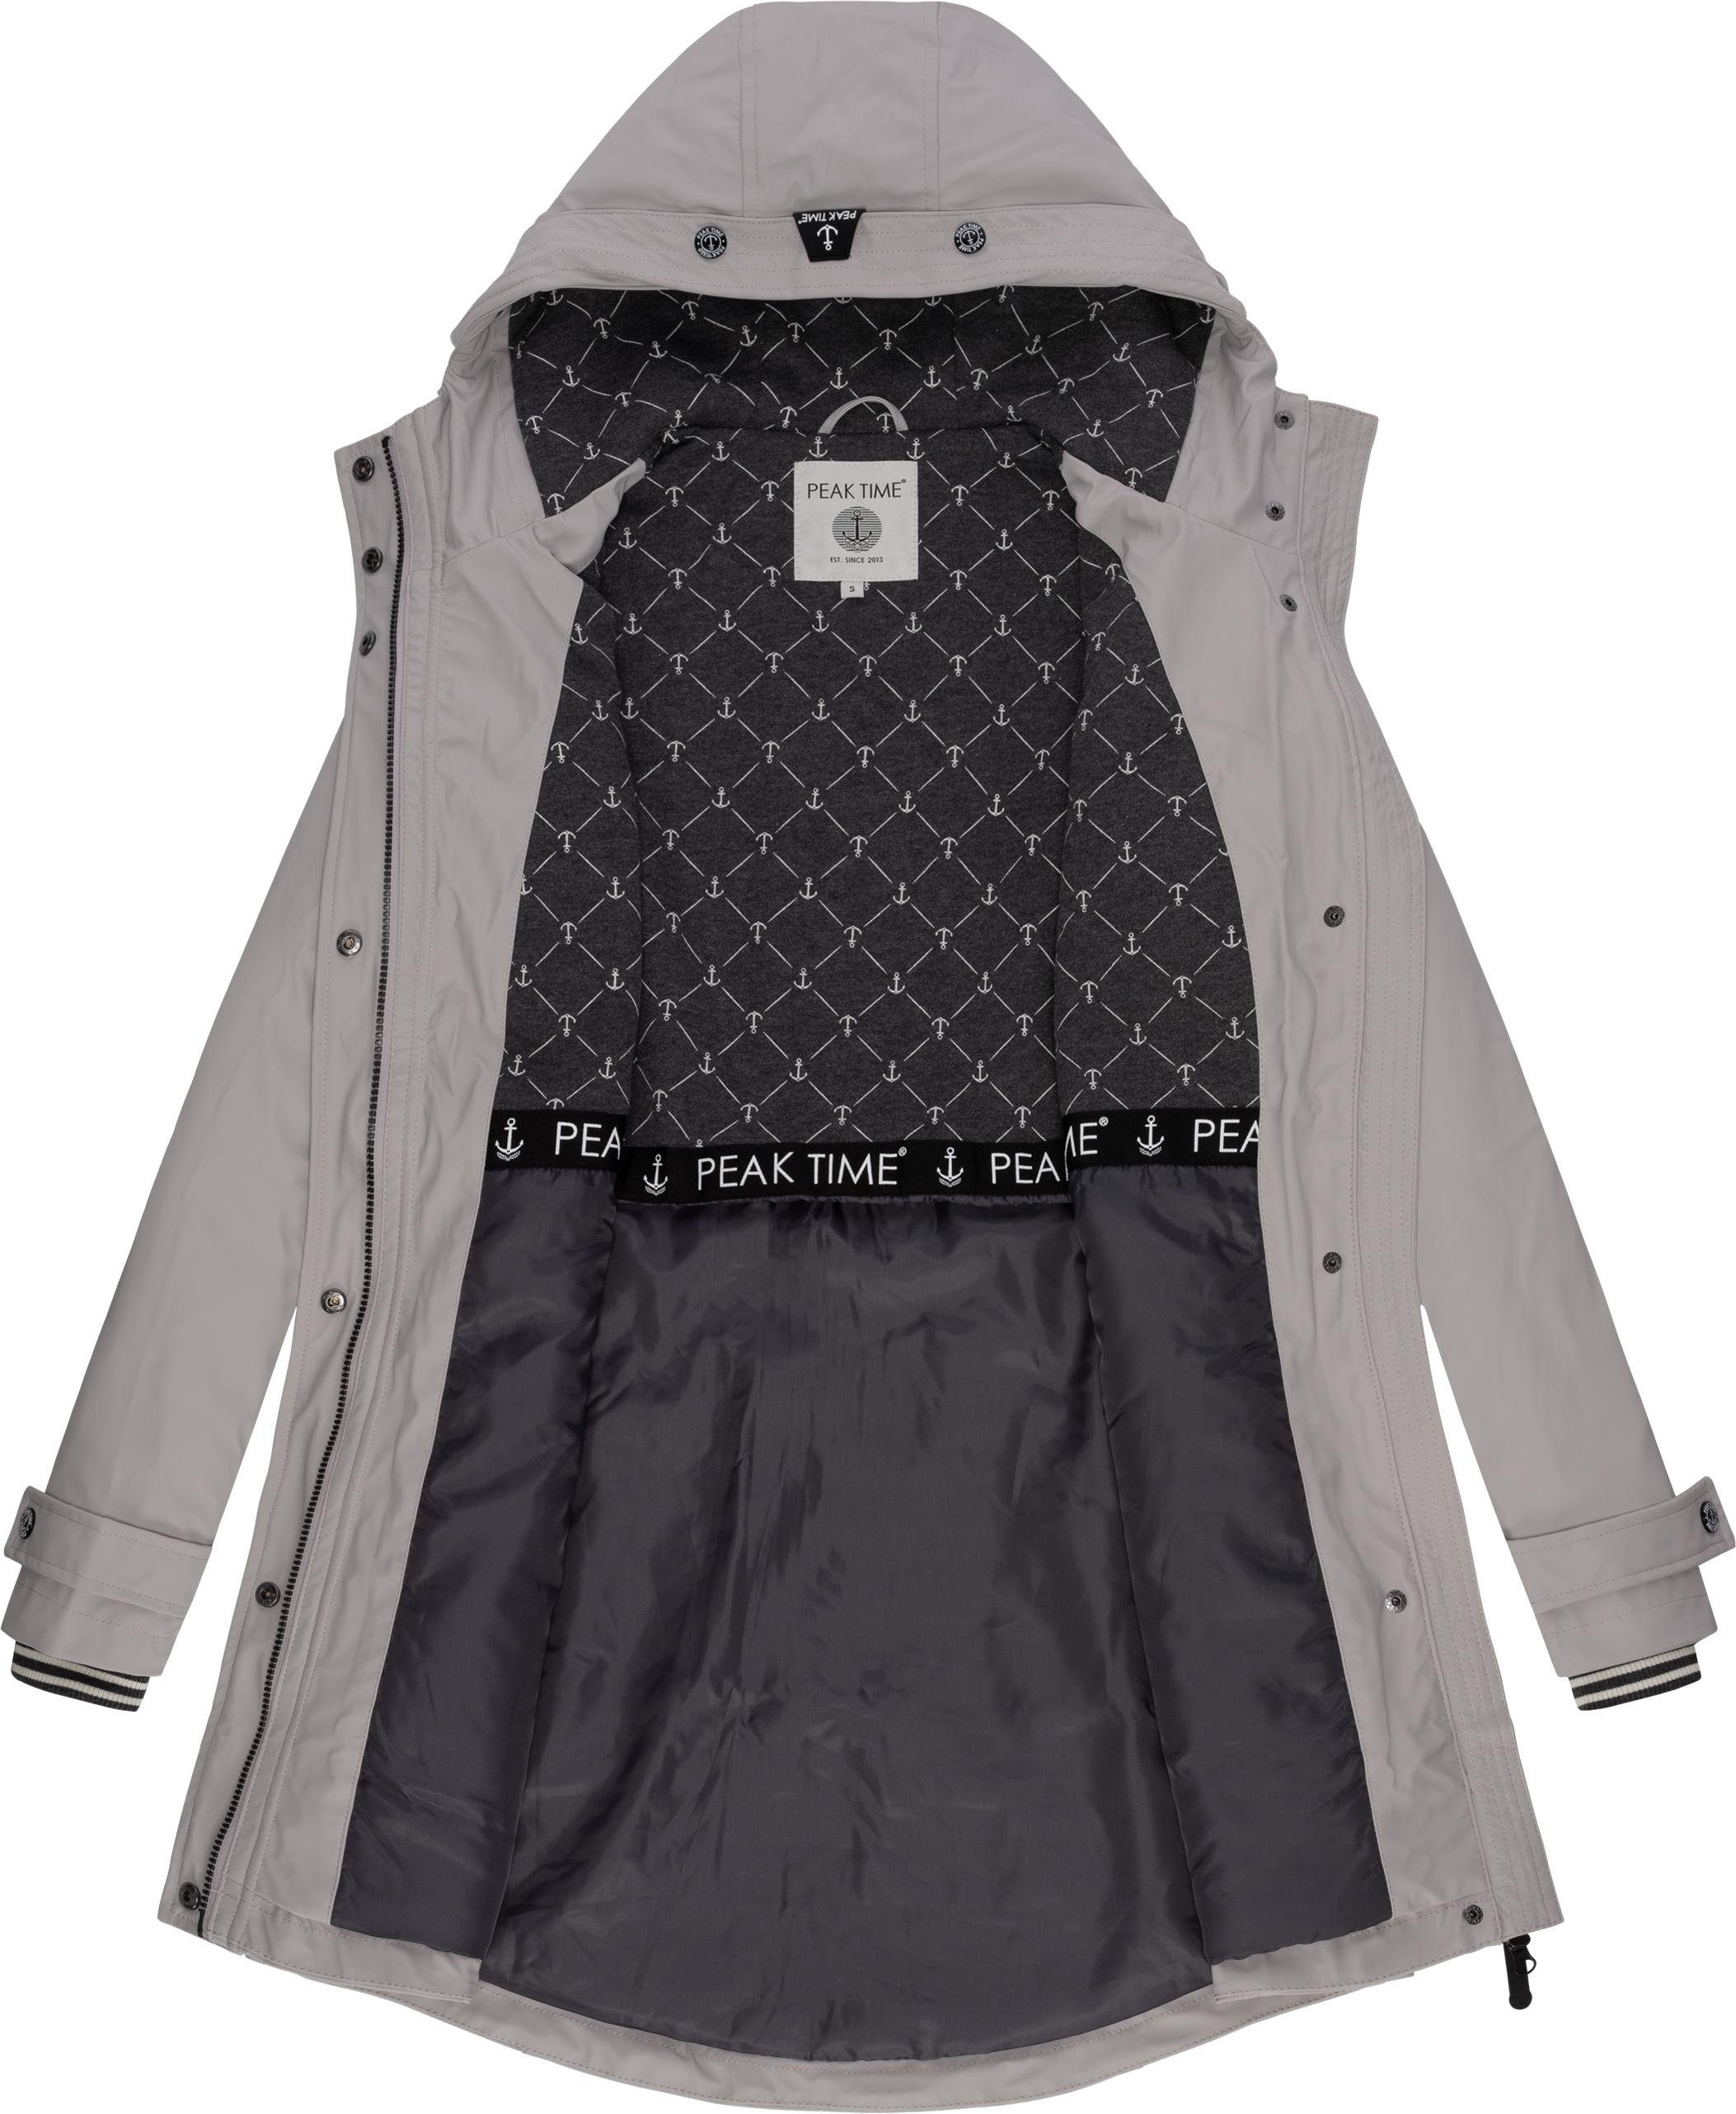 PEAK TIME Regenjacke L60042 stylisch taillierter für hellgrau Regenmantel Damen